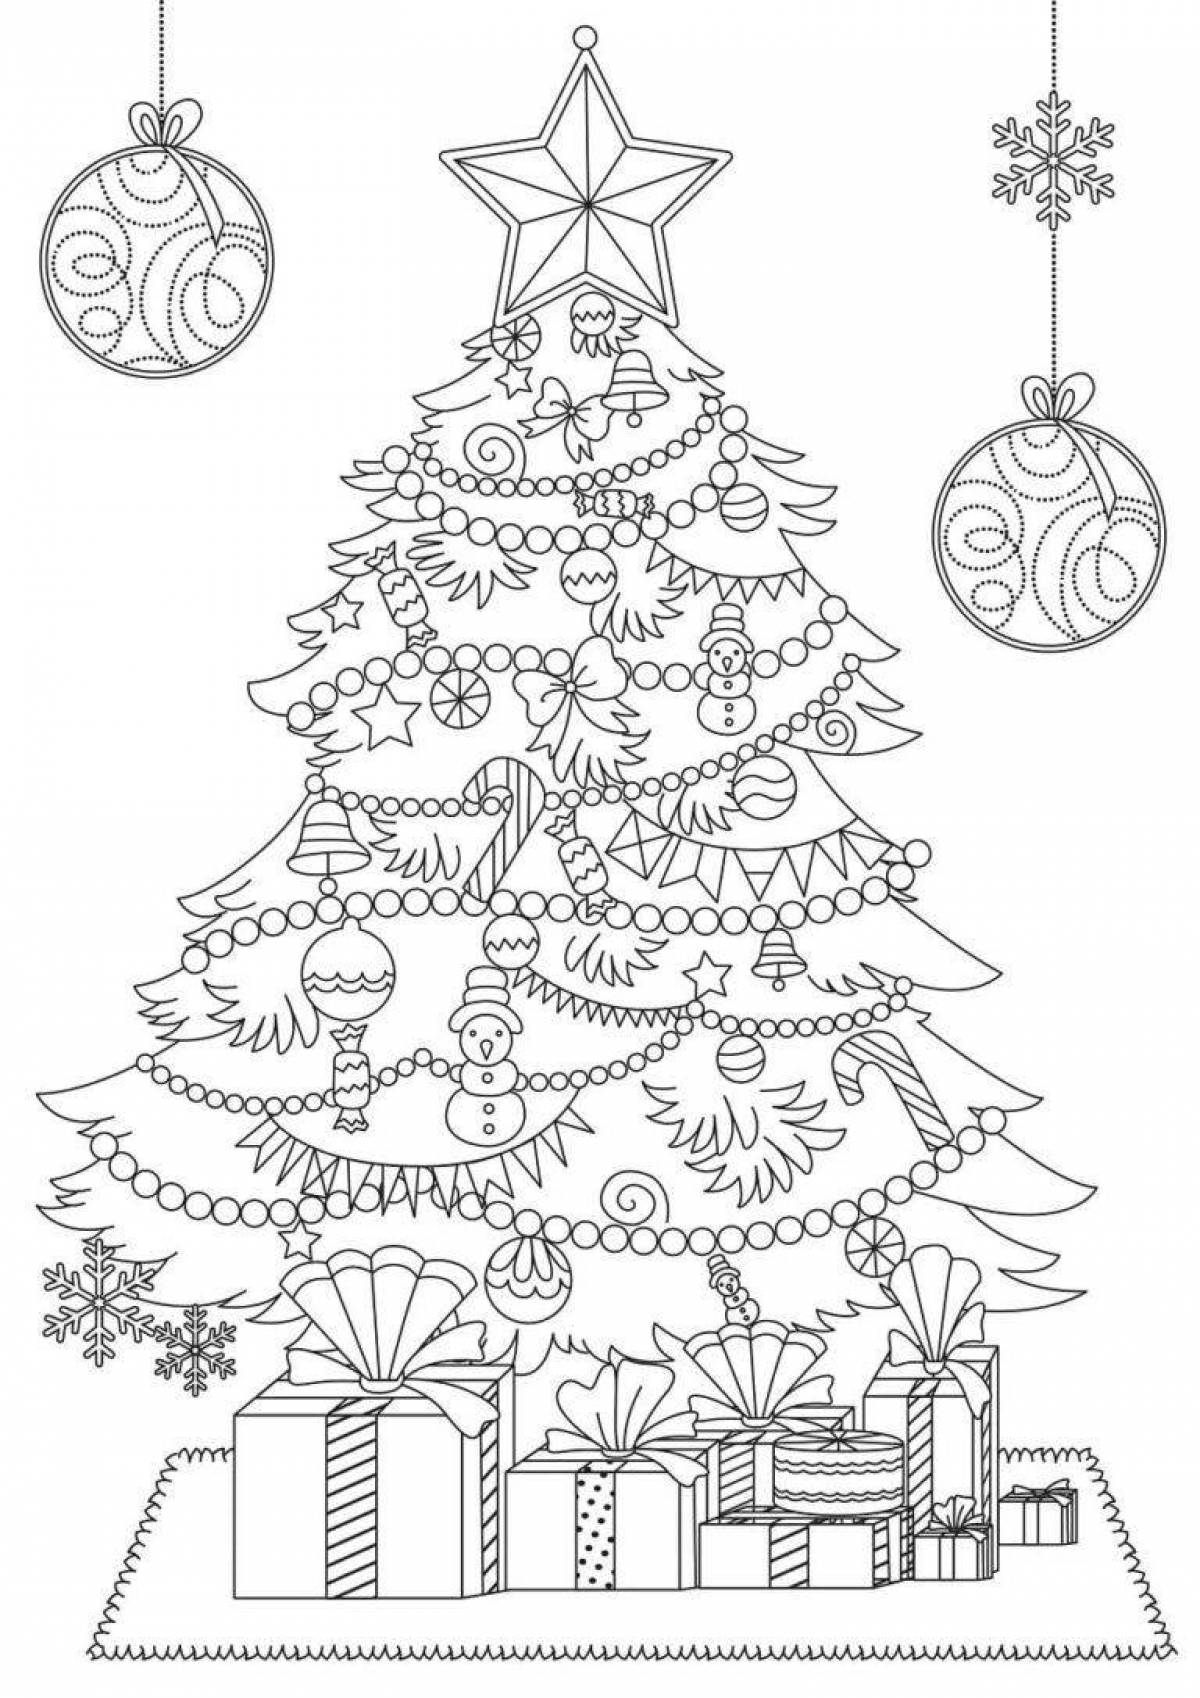 Раскраска роскошно украшенная рождественская елка